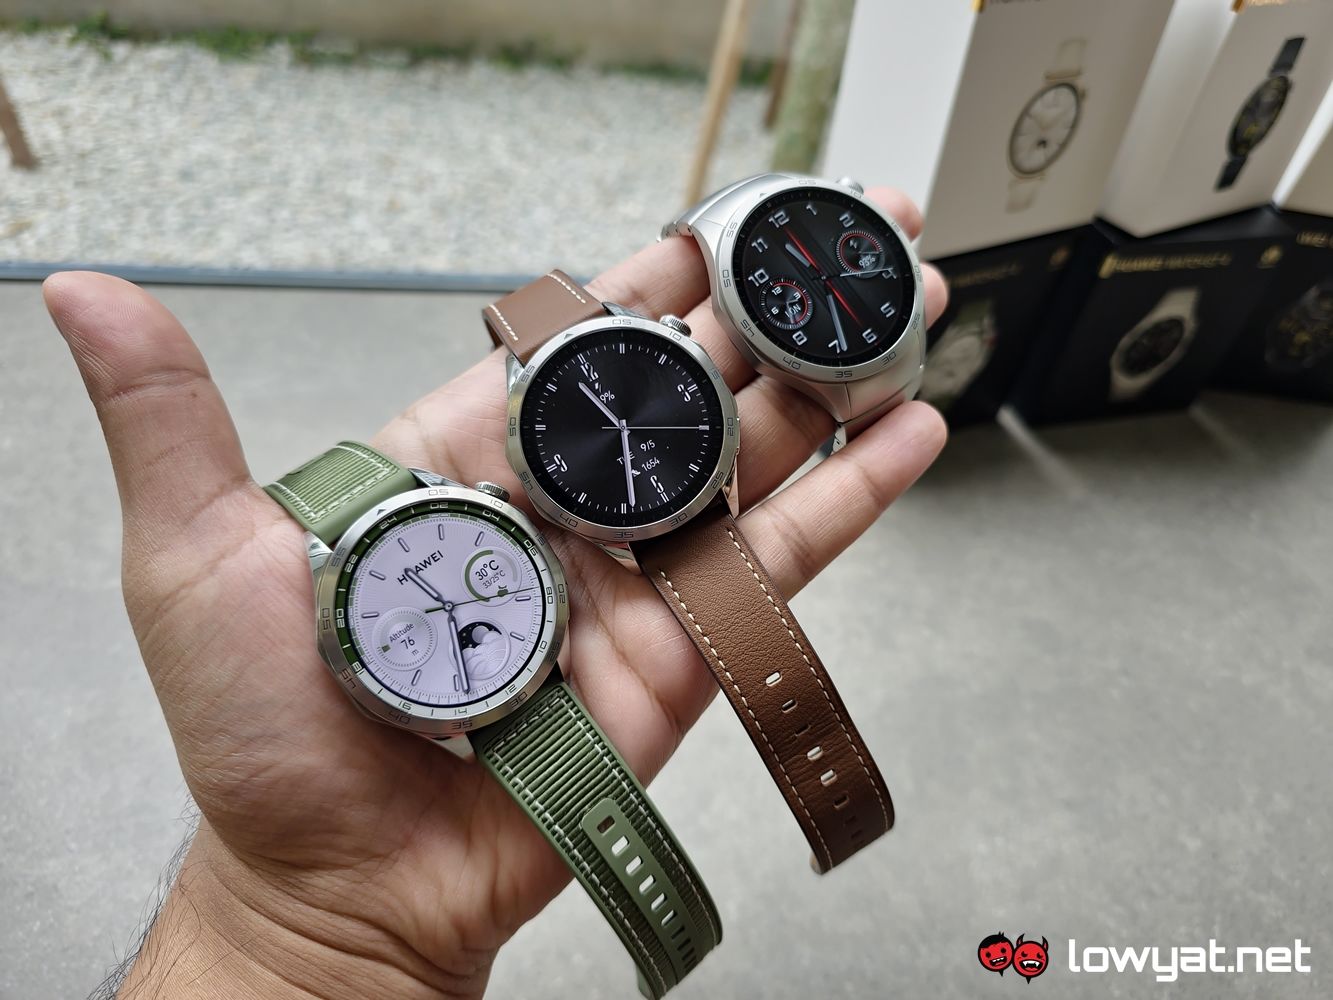 Suchergebnis Auf  Für: Huawei Watch Gt4 Pro